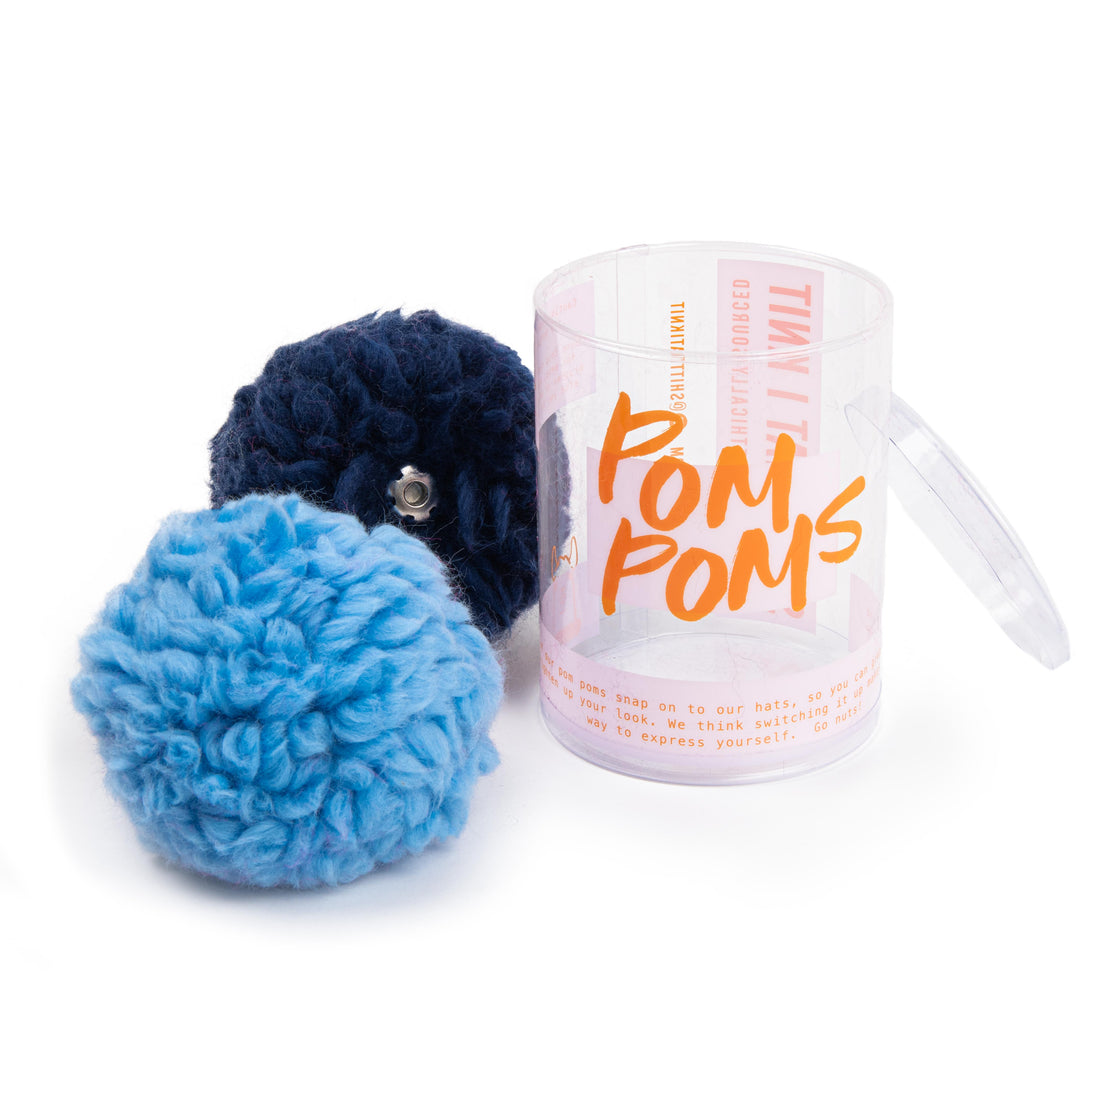 The Yarn Pom Pom Pack